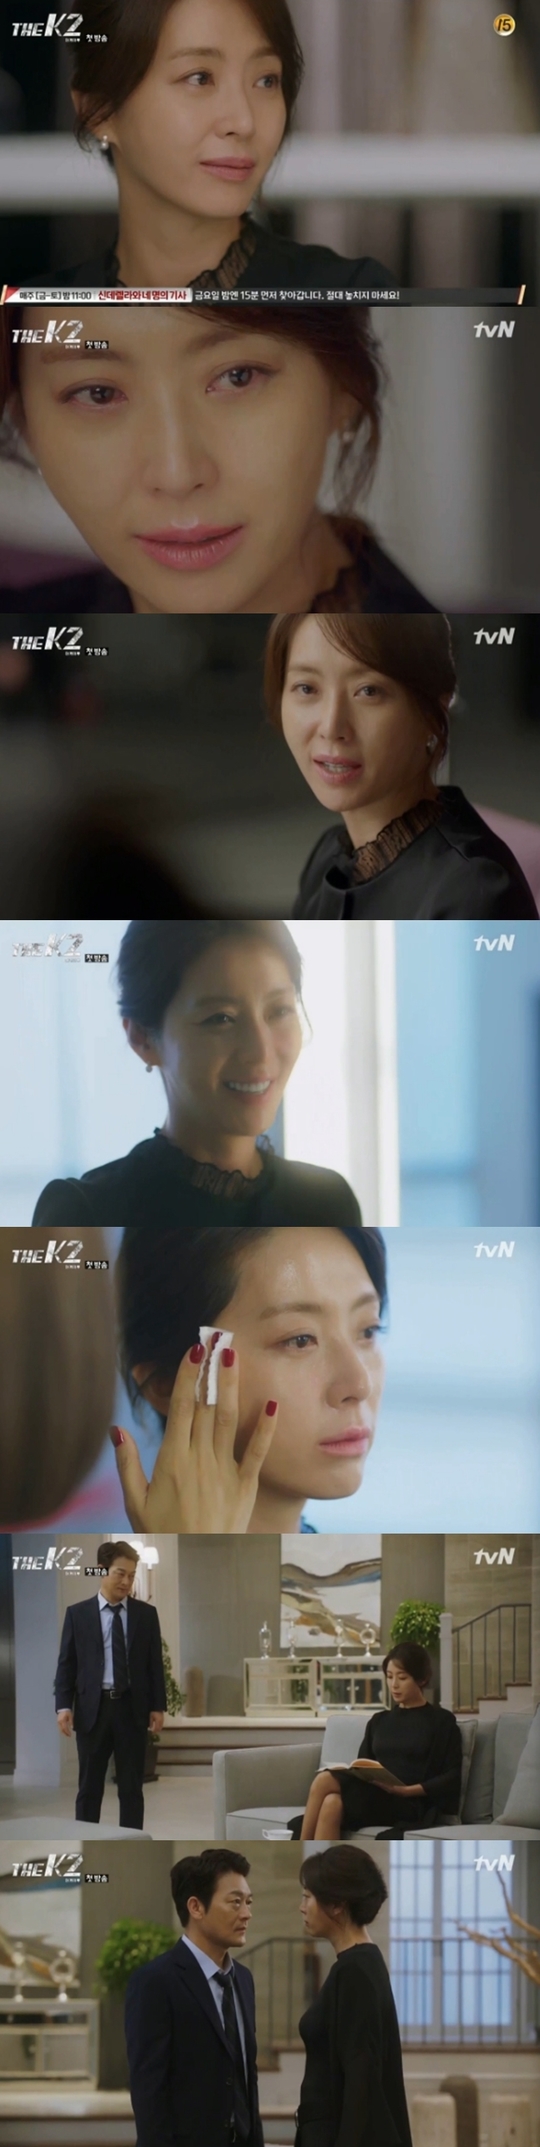 송윤아. 사진=tvN 'The K2' 방송 캡쳐